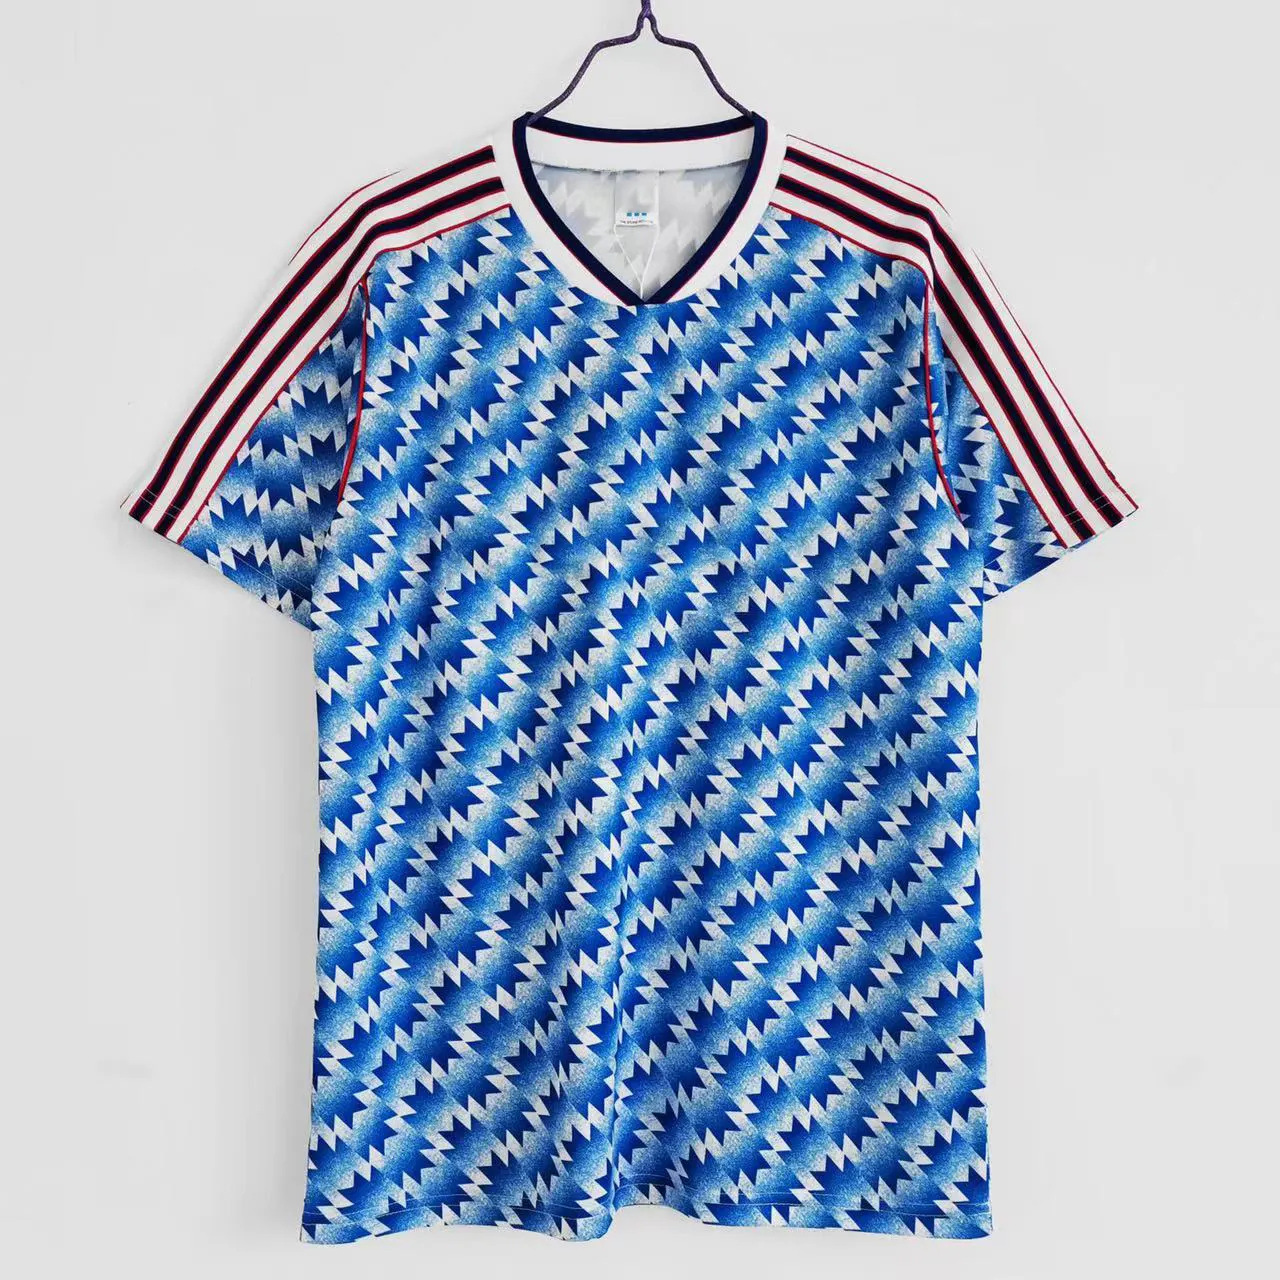 Vêtements de sport classiques vintage, maillots de football à carreaux bleus, vente en gros d'usine